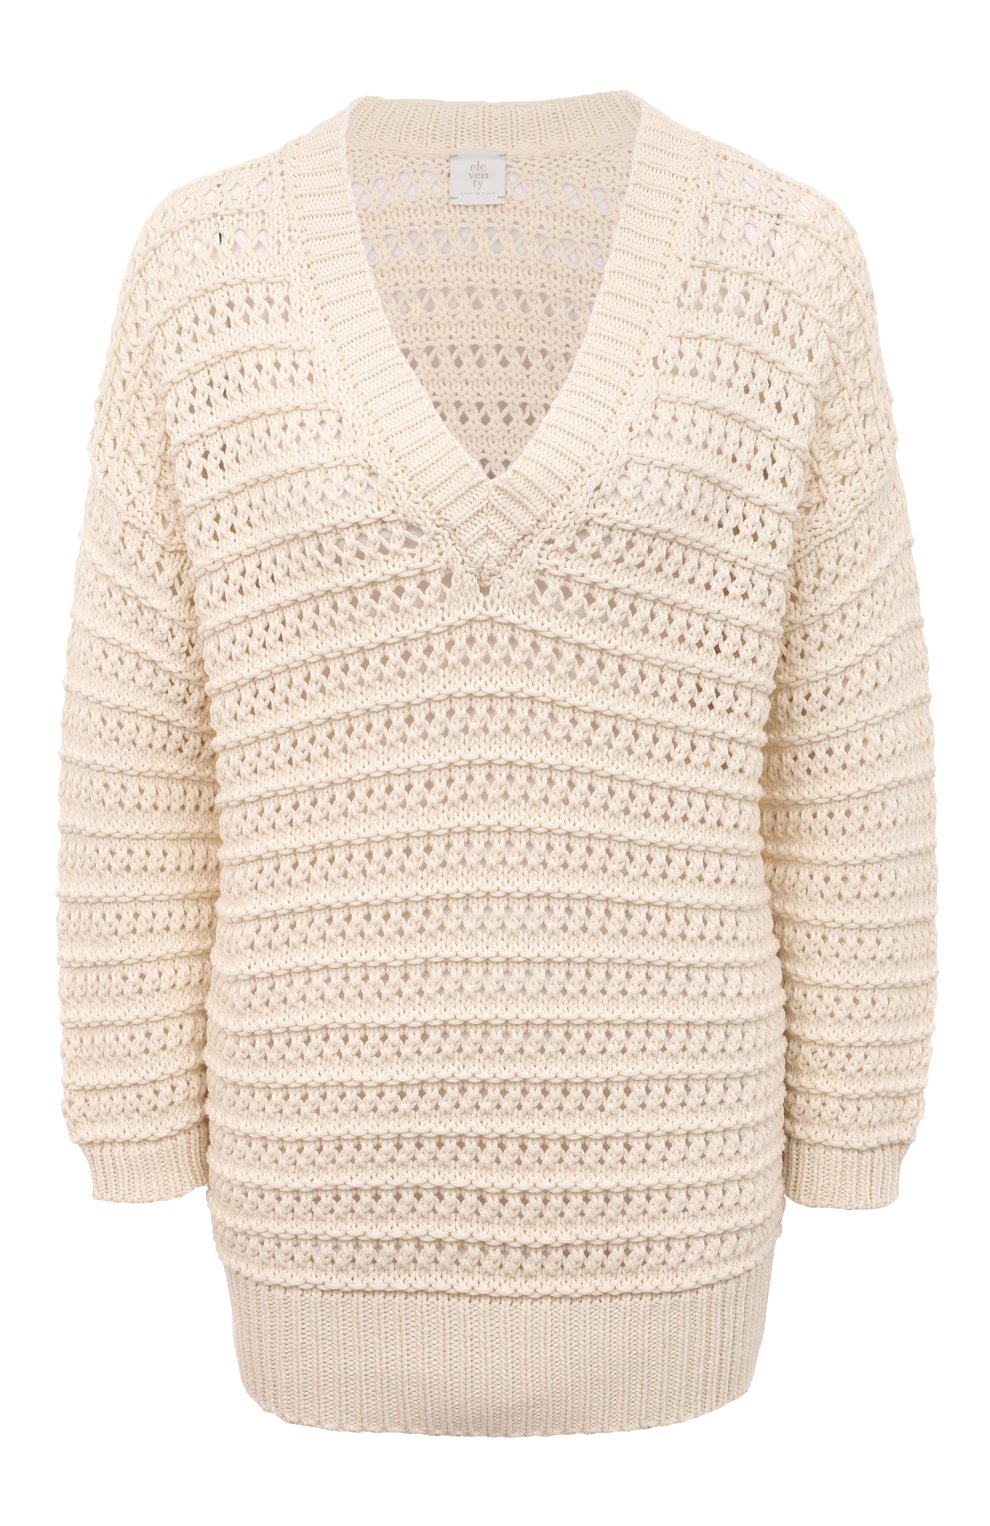 Вяжем женский свитер спицами схемы 42 размера. Схемы вязания